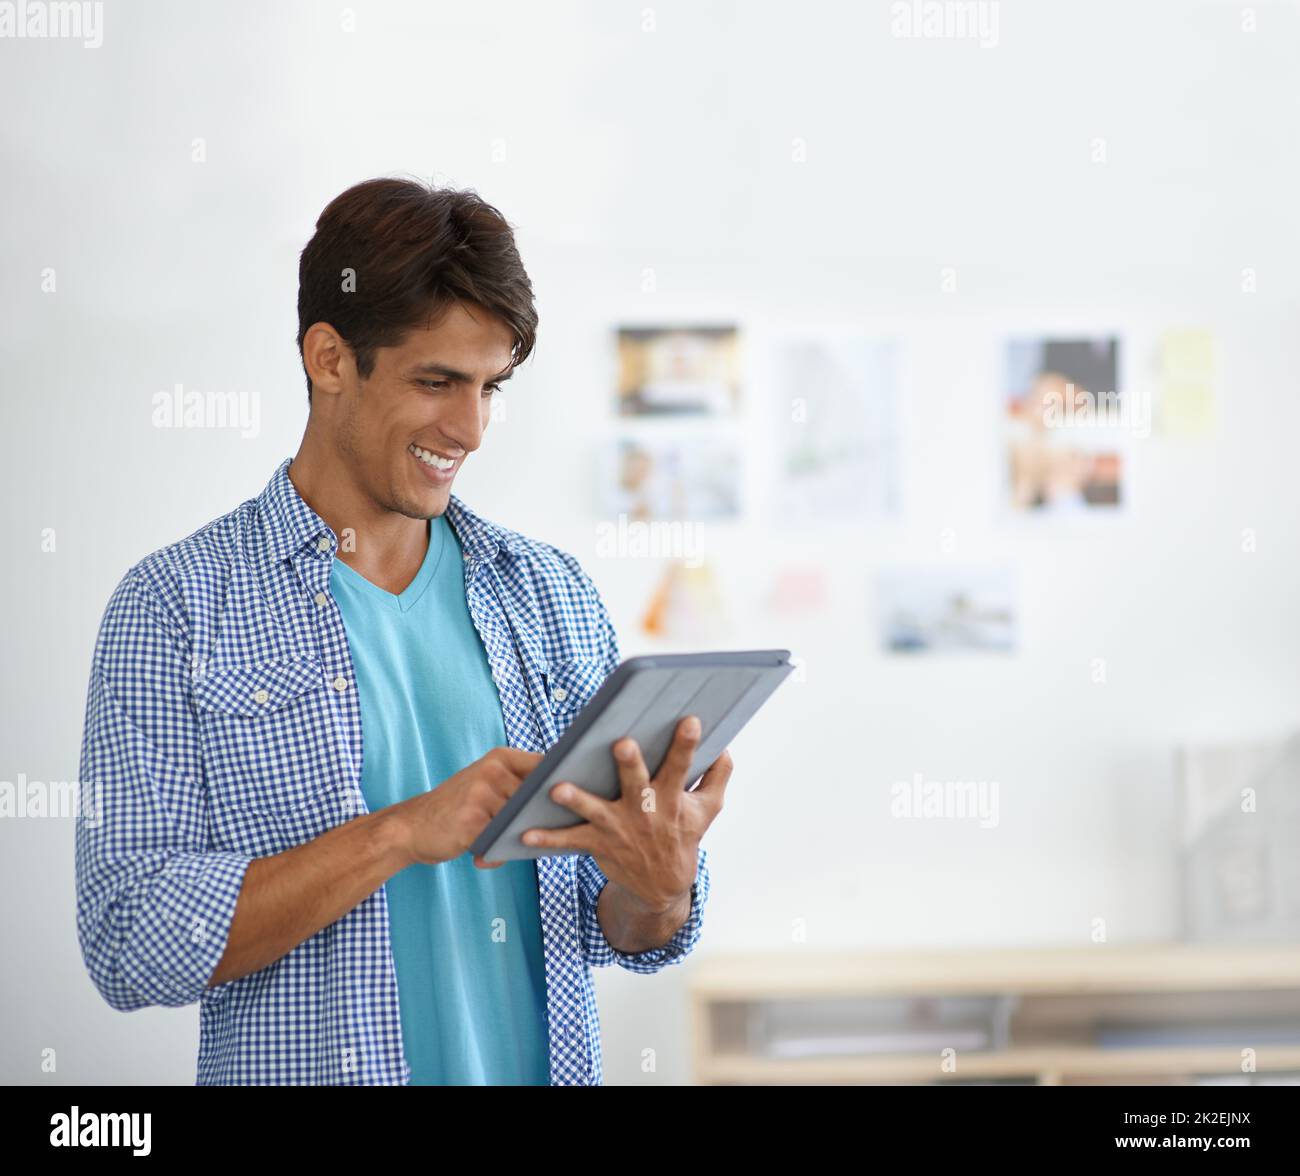 Das digitale Zeitalter. Ein ethnischer Geschäftsmann arbeitet an seinem digitalen Tablet - Copyspace. Stockfoto